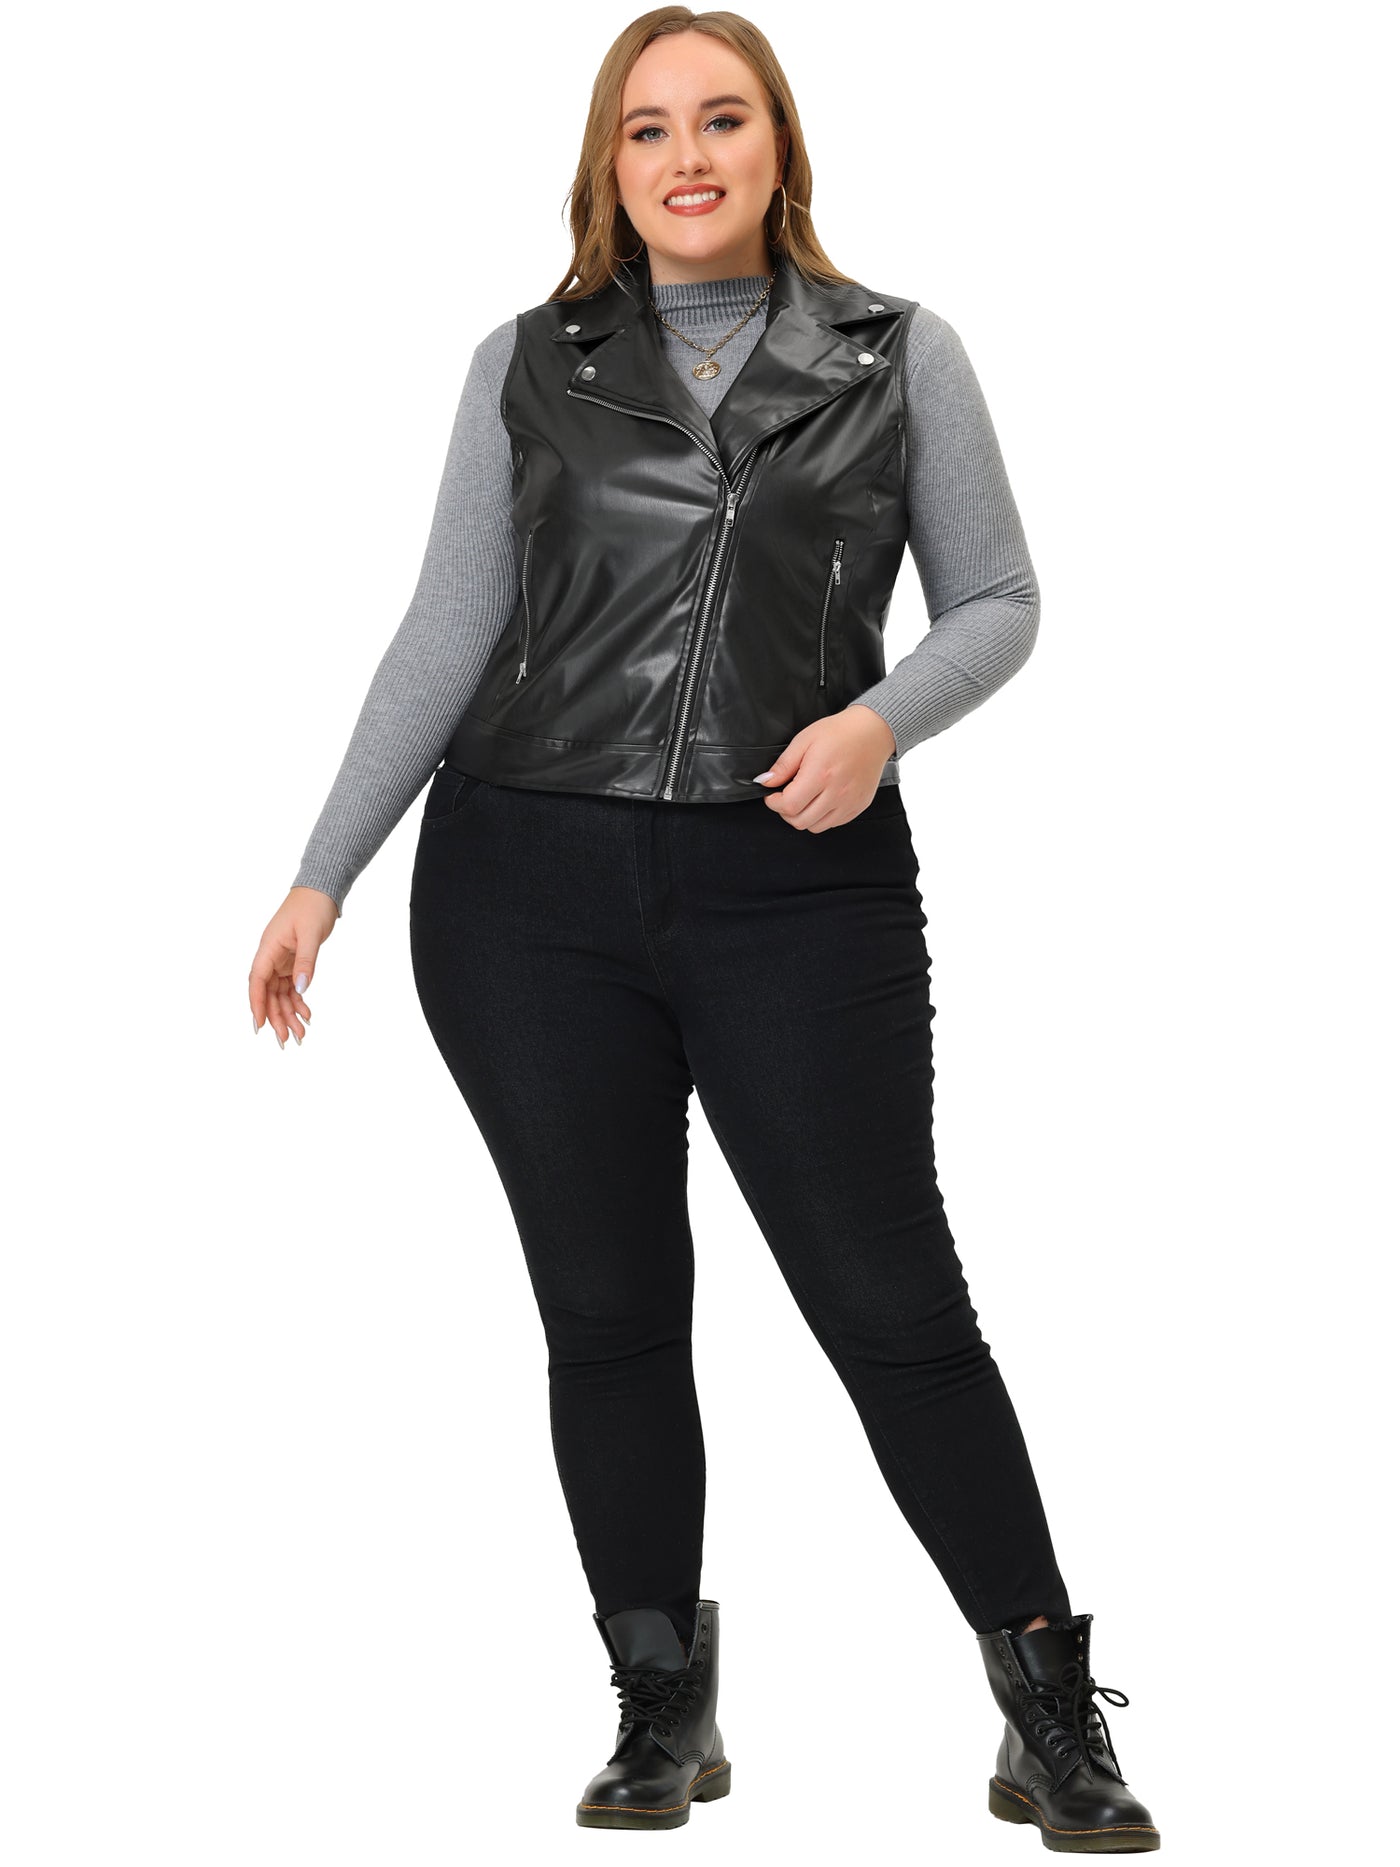 Bublédon Plus Size Leather Motorcycle Vest for Women Zip Up Notch Lapel Riding Club Black Biker Vests Jacket